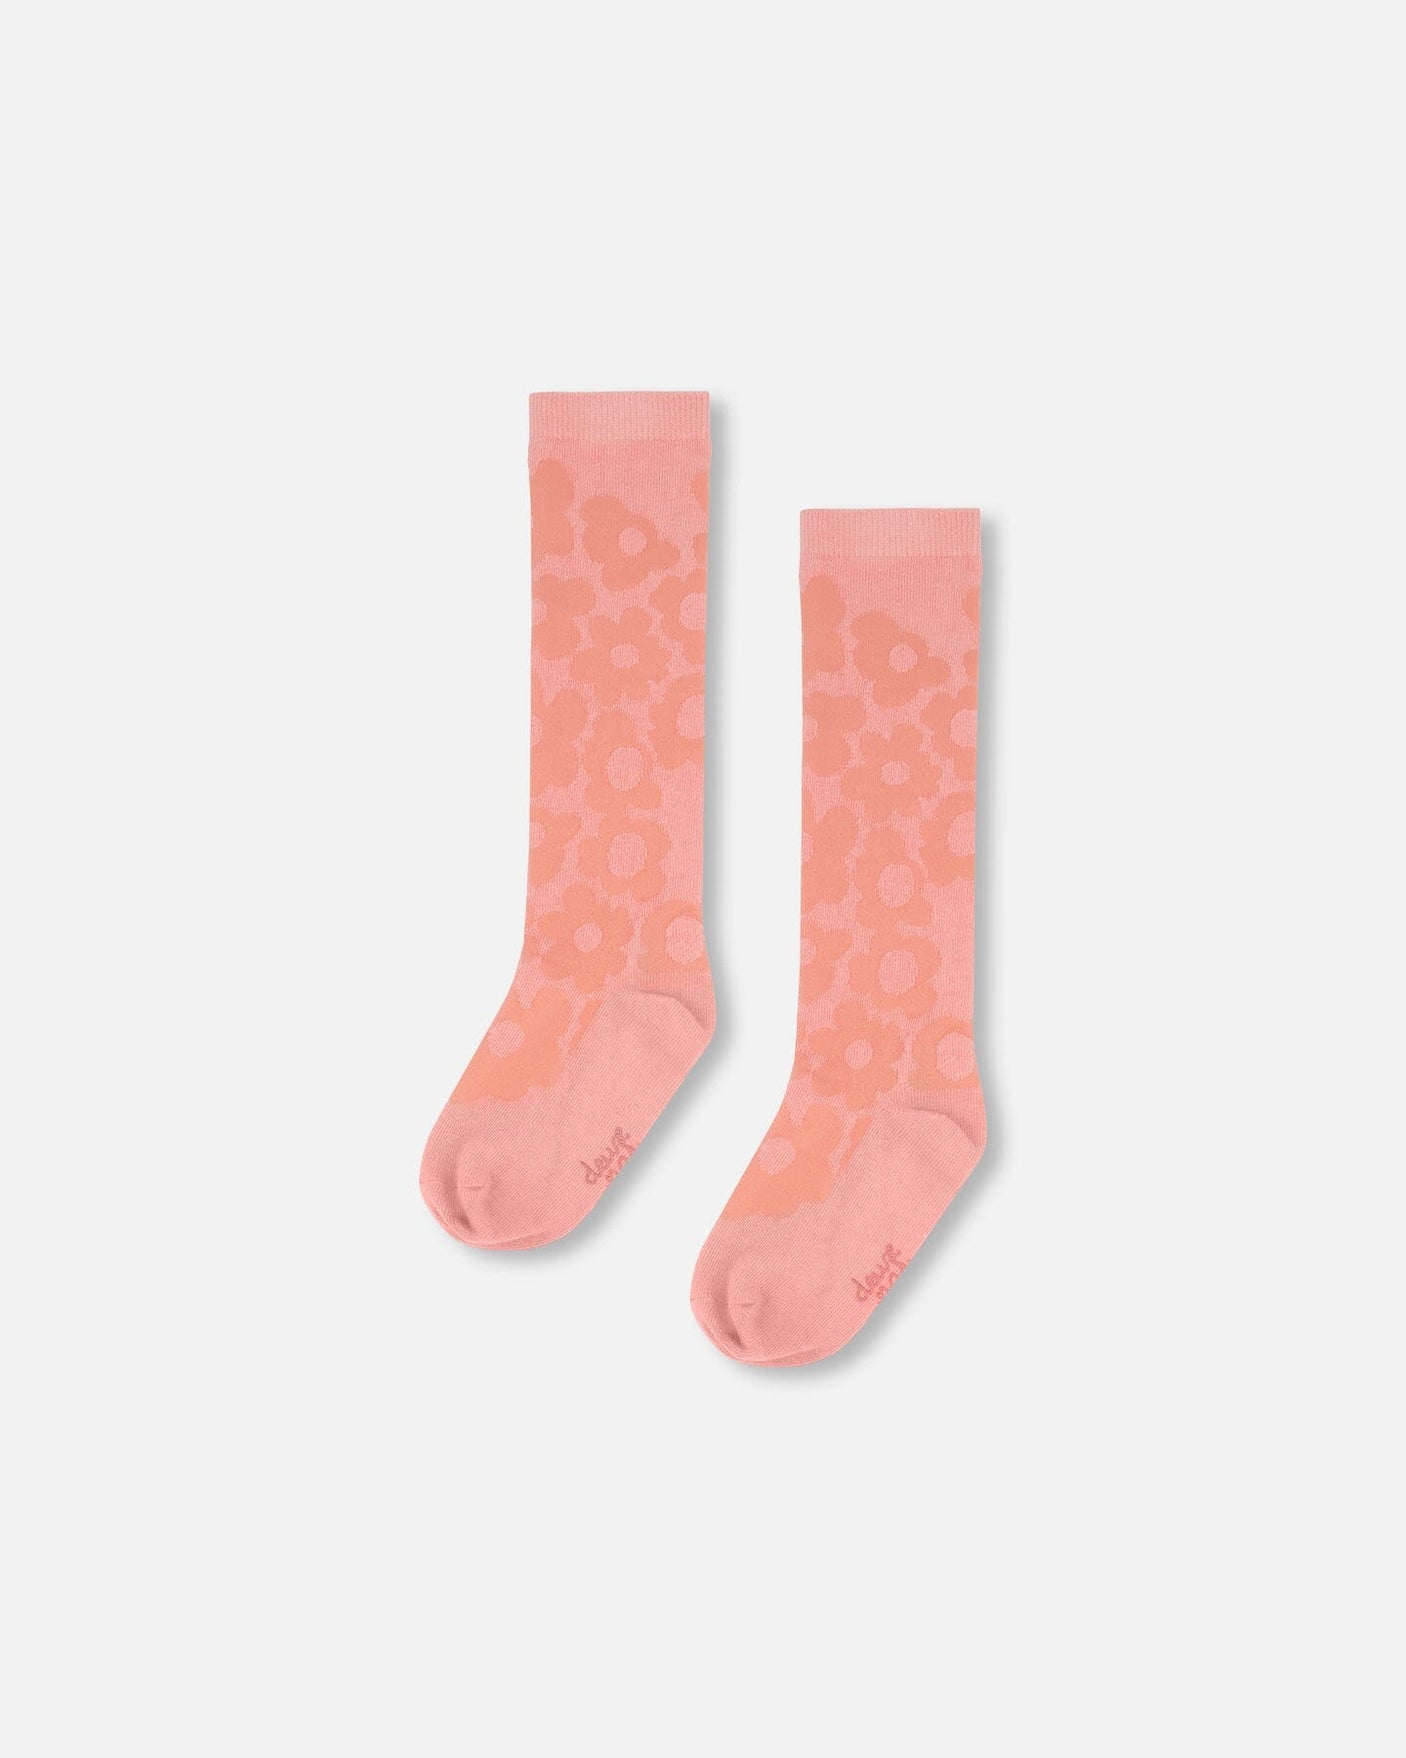 Jacquard Socks Misty Pink-0